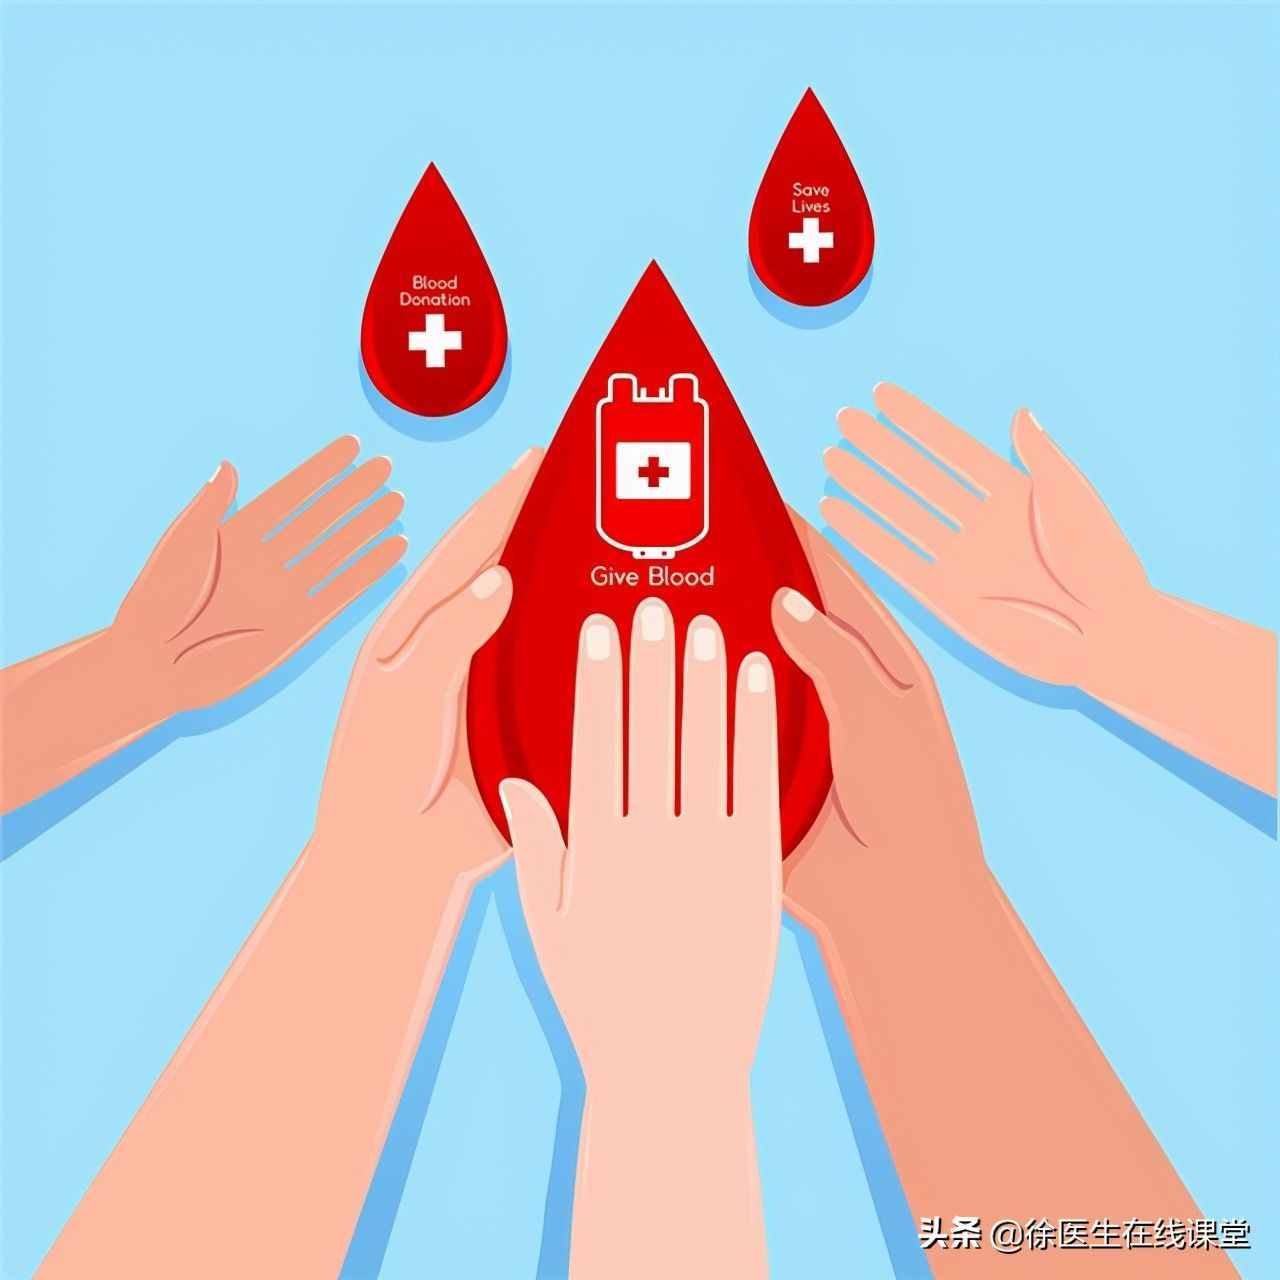 献血到底对身体有没有害？为什么献血无偿用血却有偿？